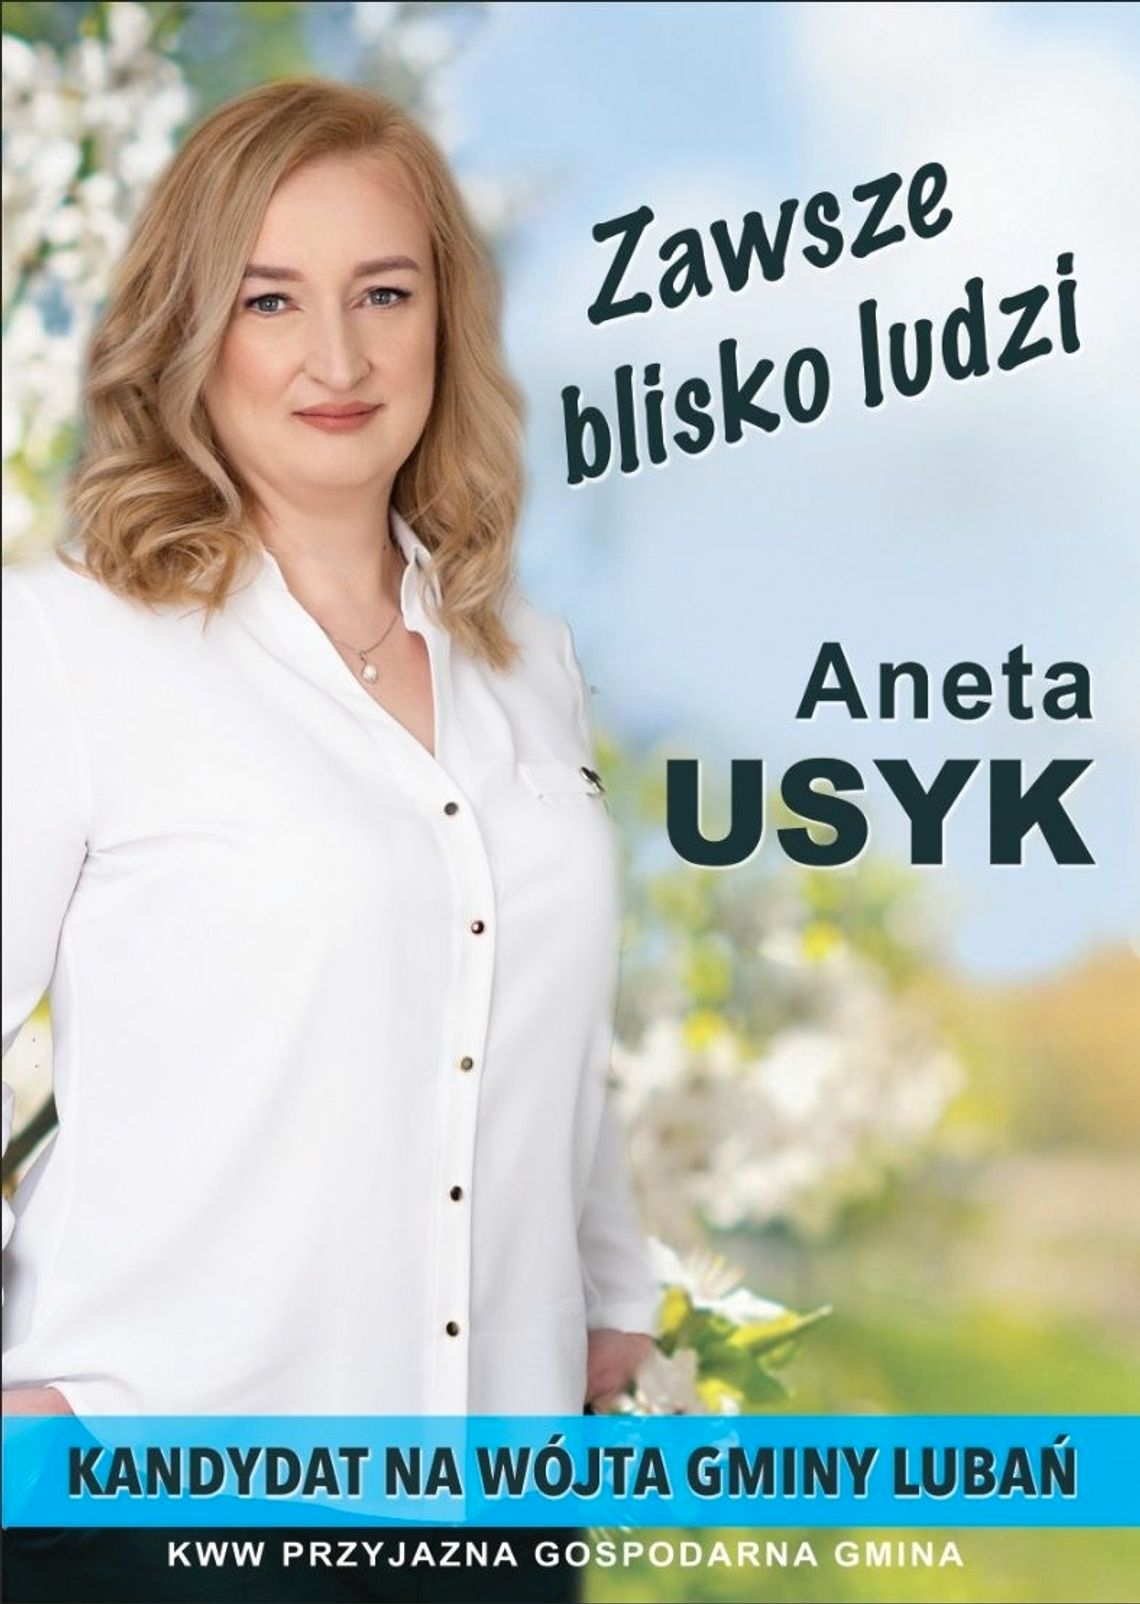 Aneta Usyk, kandydatka na Wójta Gminy Lubań zaprasza na spotkania